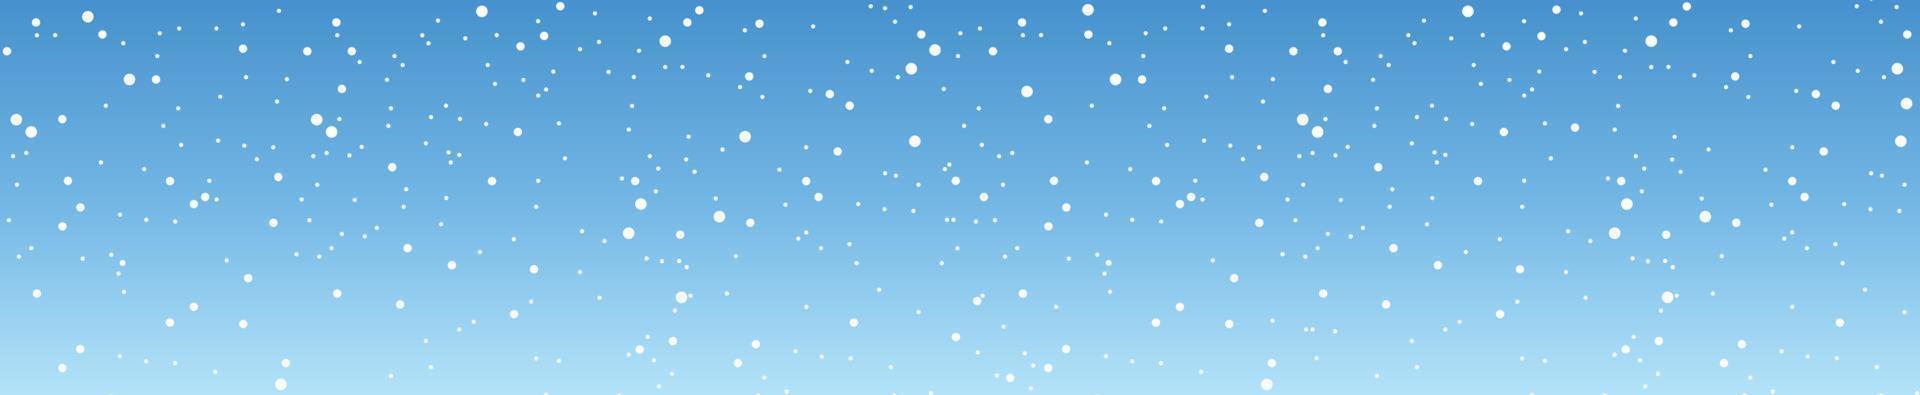 Schneeflocken und Winterhintergrund, Winterlandschaft, horizontales Banner, Vektorillustration. vektor